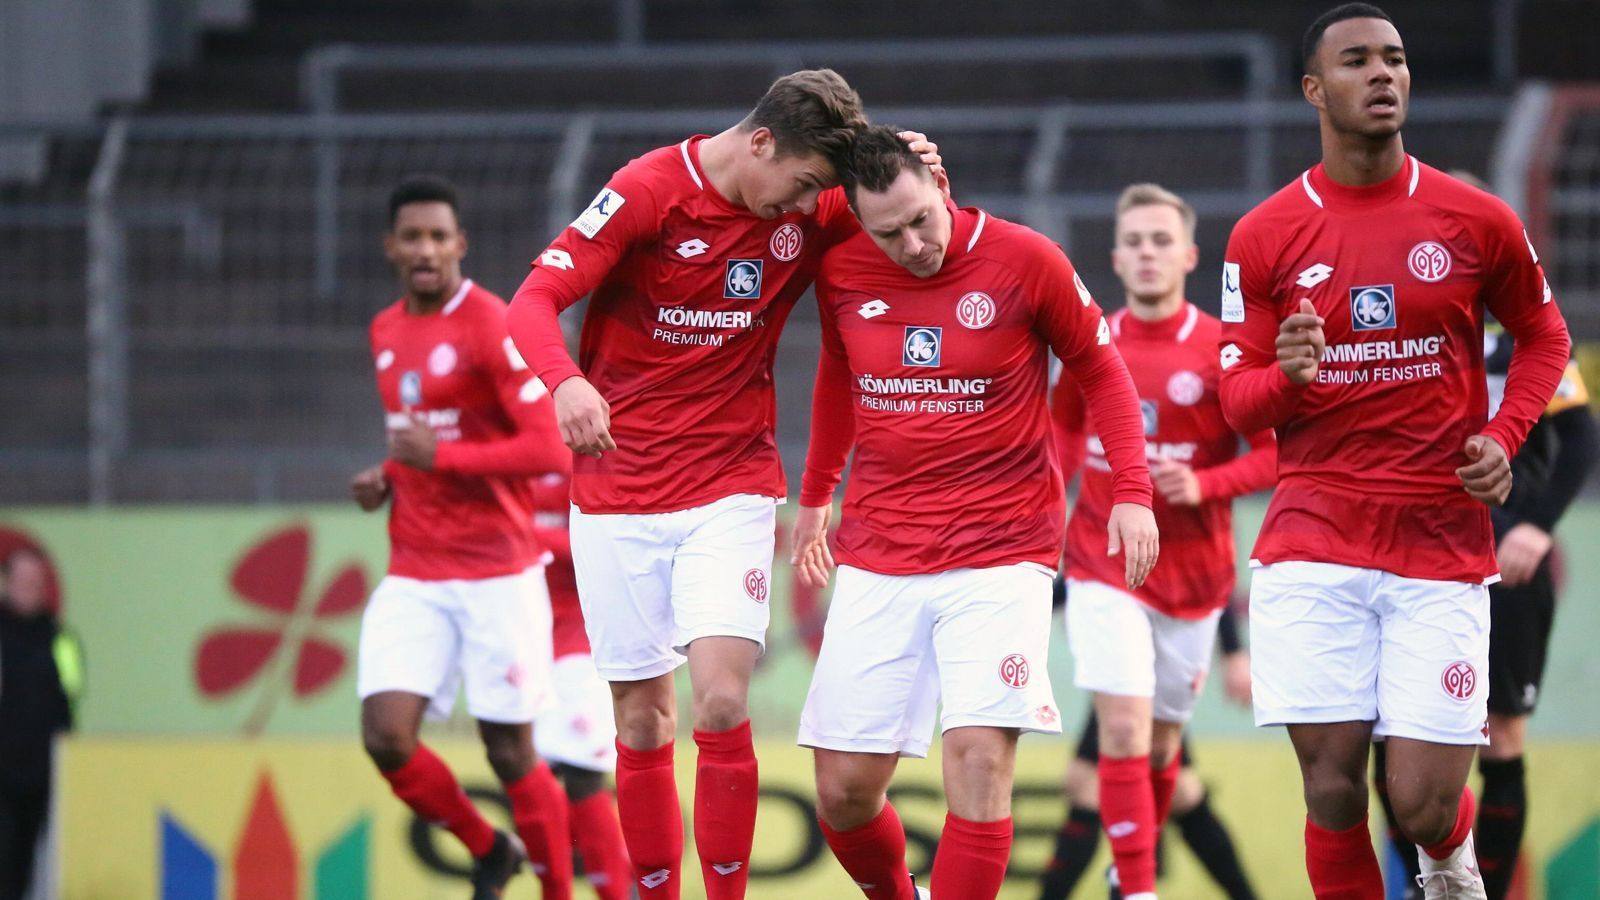 
                <strong>1. FSV Mainz 05 (Regionalliga Südwest)</strong><br>
                Die zweite Mannschaft des 1. FSV Mainz 05 blickt auf eine Vergangenheit in der 3. Liga zurück, als der Nachwuchs des "Karnevalsvereins" vom heutigen Bundesliga-Trainer Sandro Schwarz betreut wurde. In der abgelaufenen Saison aber wären die Mainzer beinahe in die Fünftklassigkeit abgerutscht. Nur ein guter Endspurt mit vier Siegen aus sieben Spielen bescherte dem 1. FSV Mainz 05 in der Regionalliga Südwest mit 33 Punkten einen Platz am rettenden Ufer. Nicht zuletzt waren die zwölf Saisontore von Karl-Heinz Lappe (Mi.) entscheidend für den Mainzer Regionalliga-Verbleib.
              